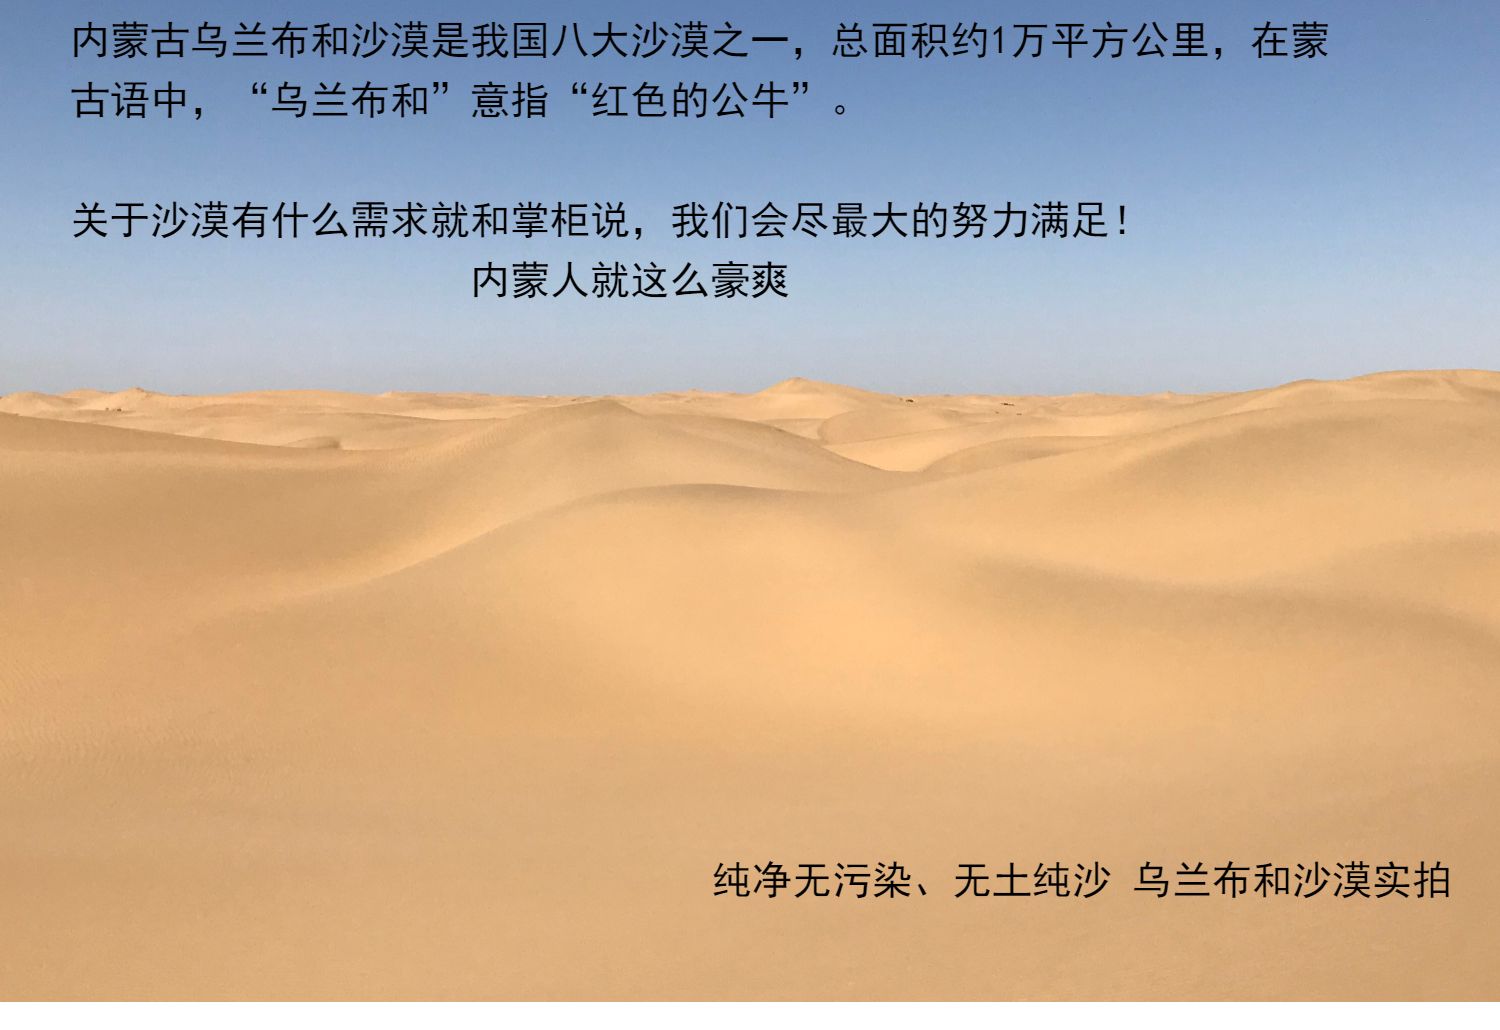 内蒙古沙漠纯天然沙子纯净无污染按吨批